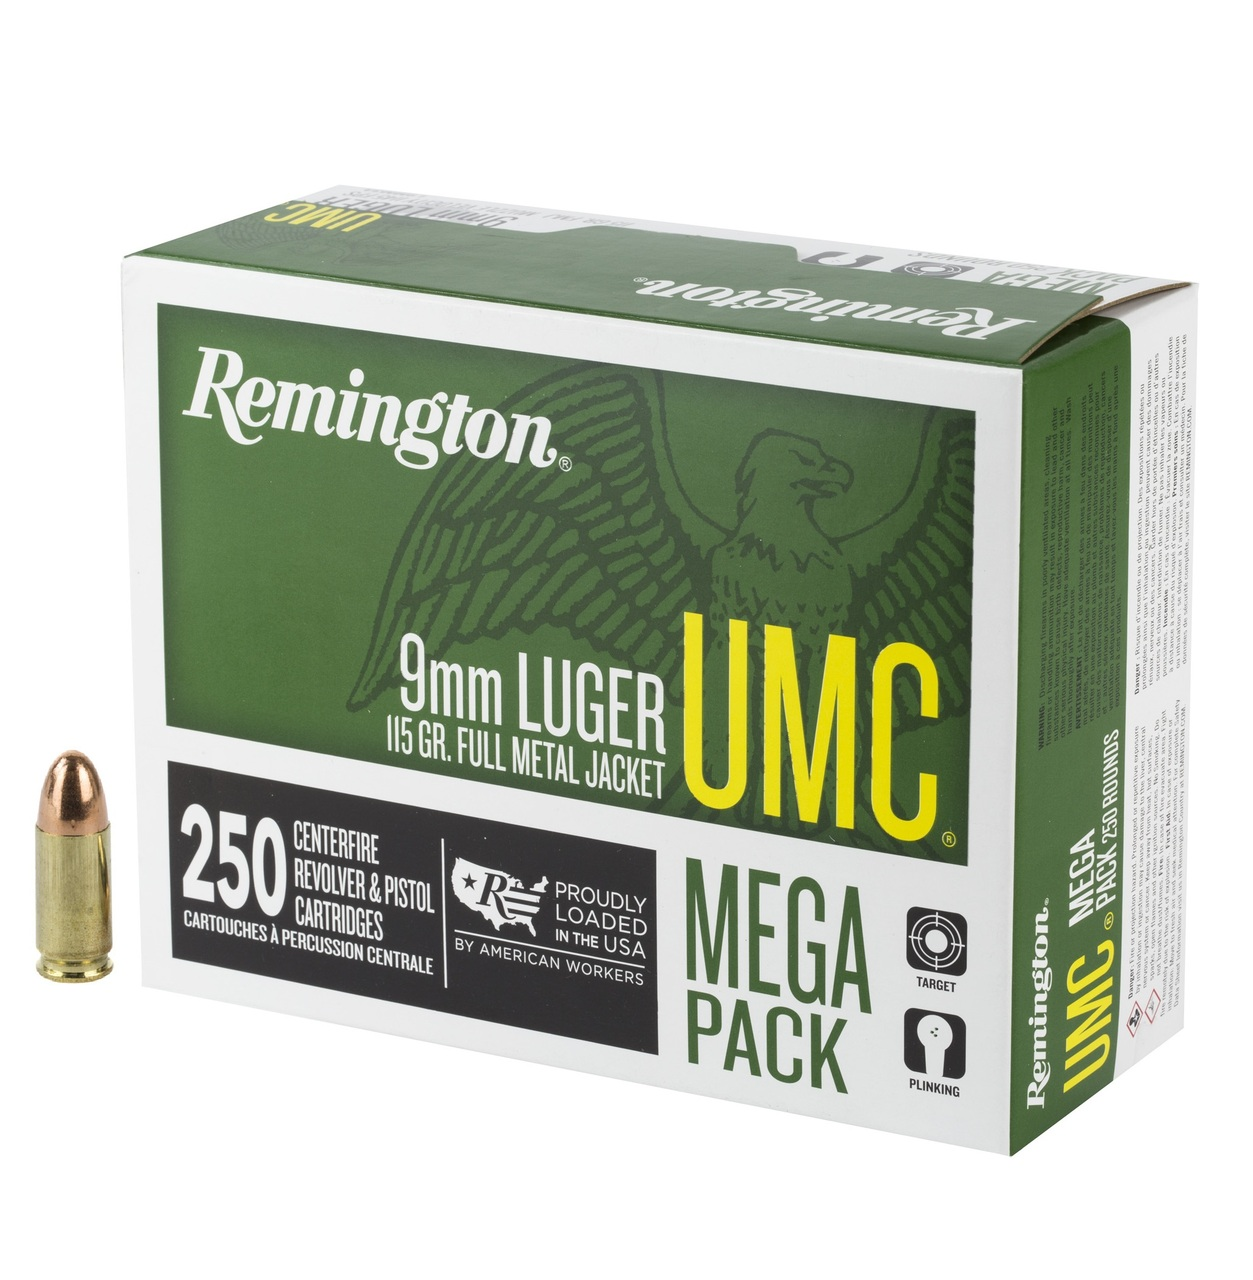 Remington UMC Mega Pack 9mm Luger 115 Gr FMJ, 250 Rounds